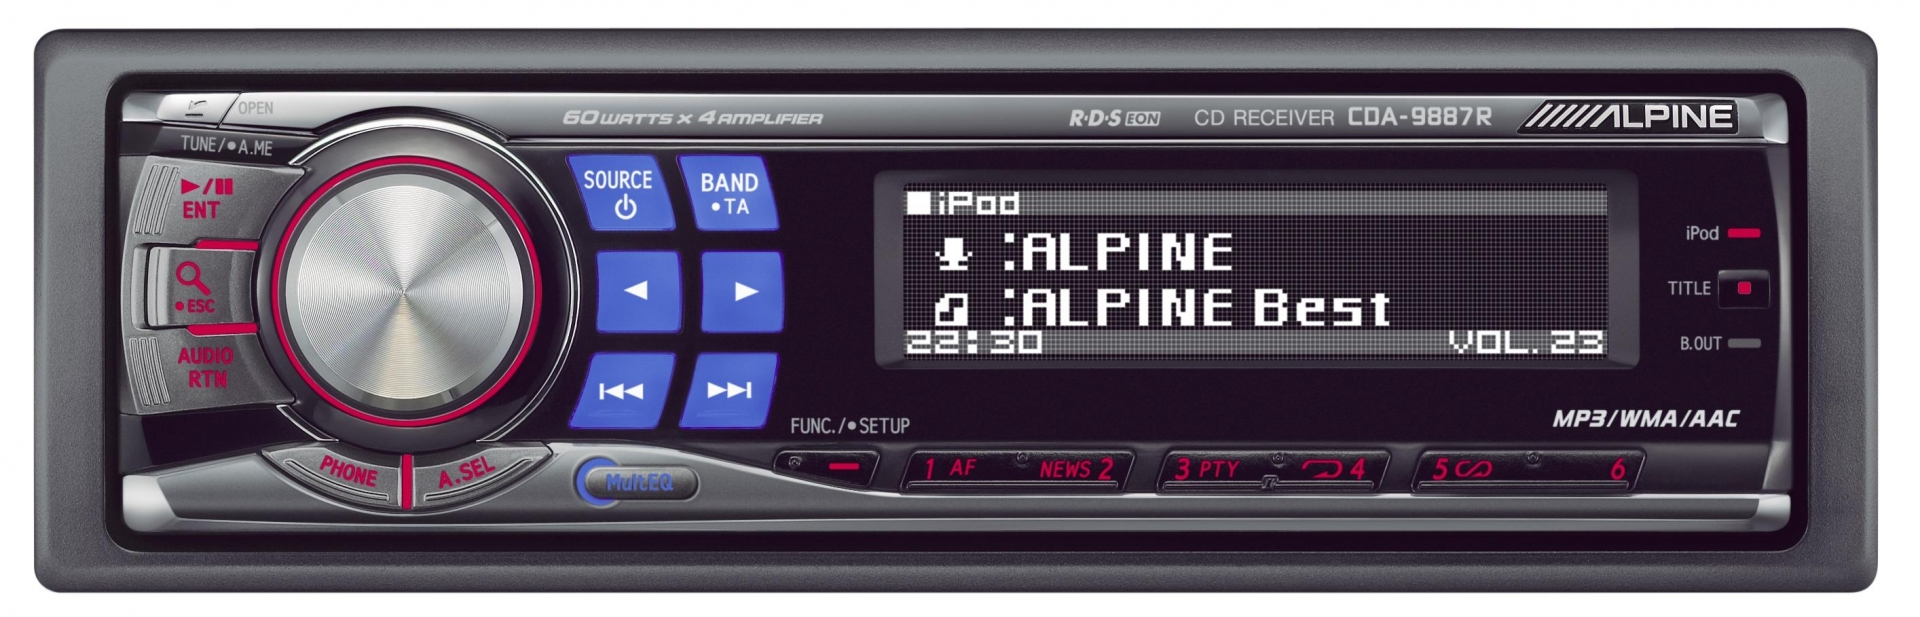 Alpine Alpine CDA-9885 R